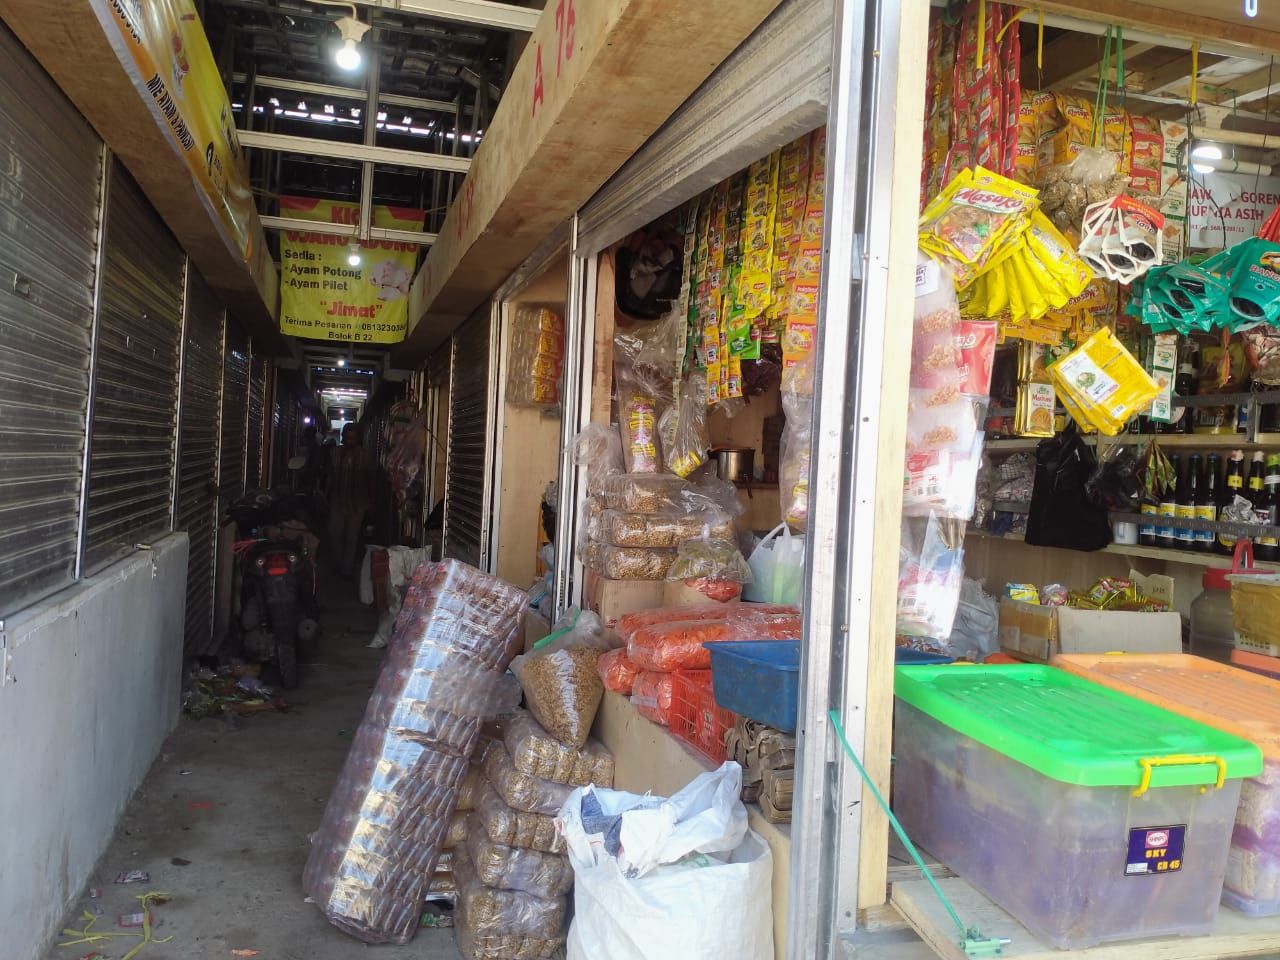 Tempat relokasi untuk pedagang saat dilakukan revitalisasi Pasar Banjaran./ Feby Syarifah - GalamediaNews